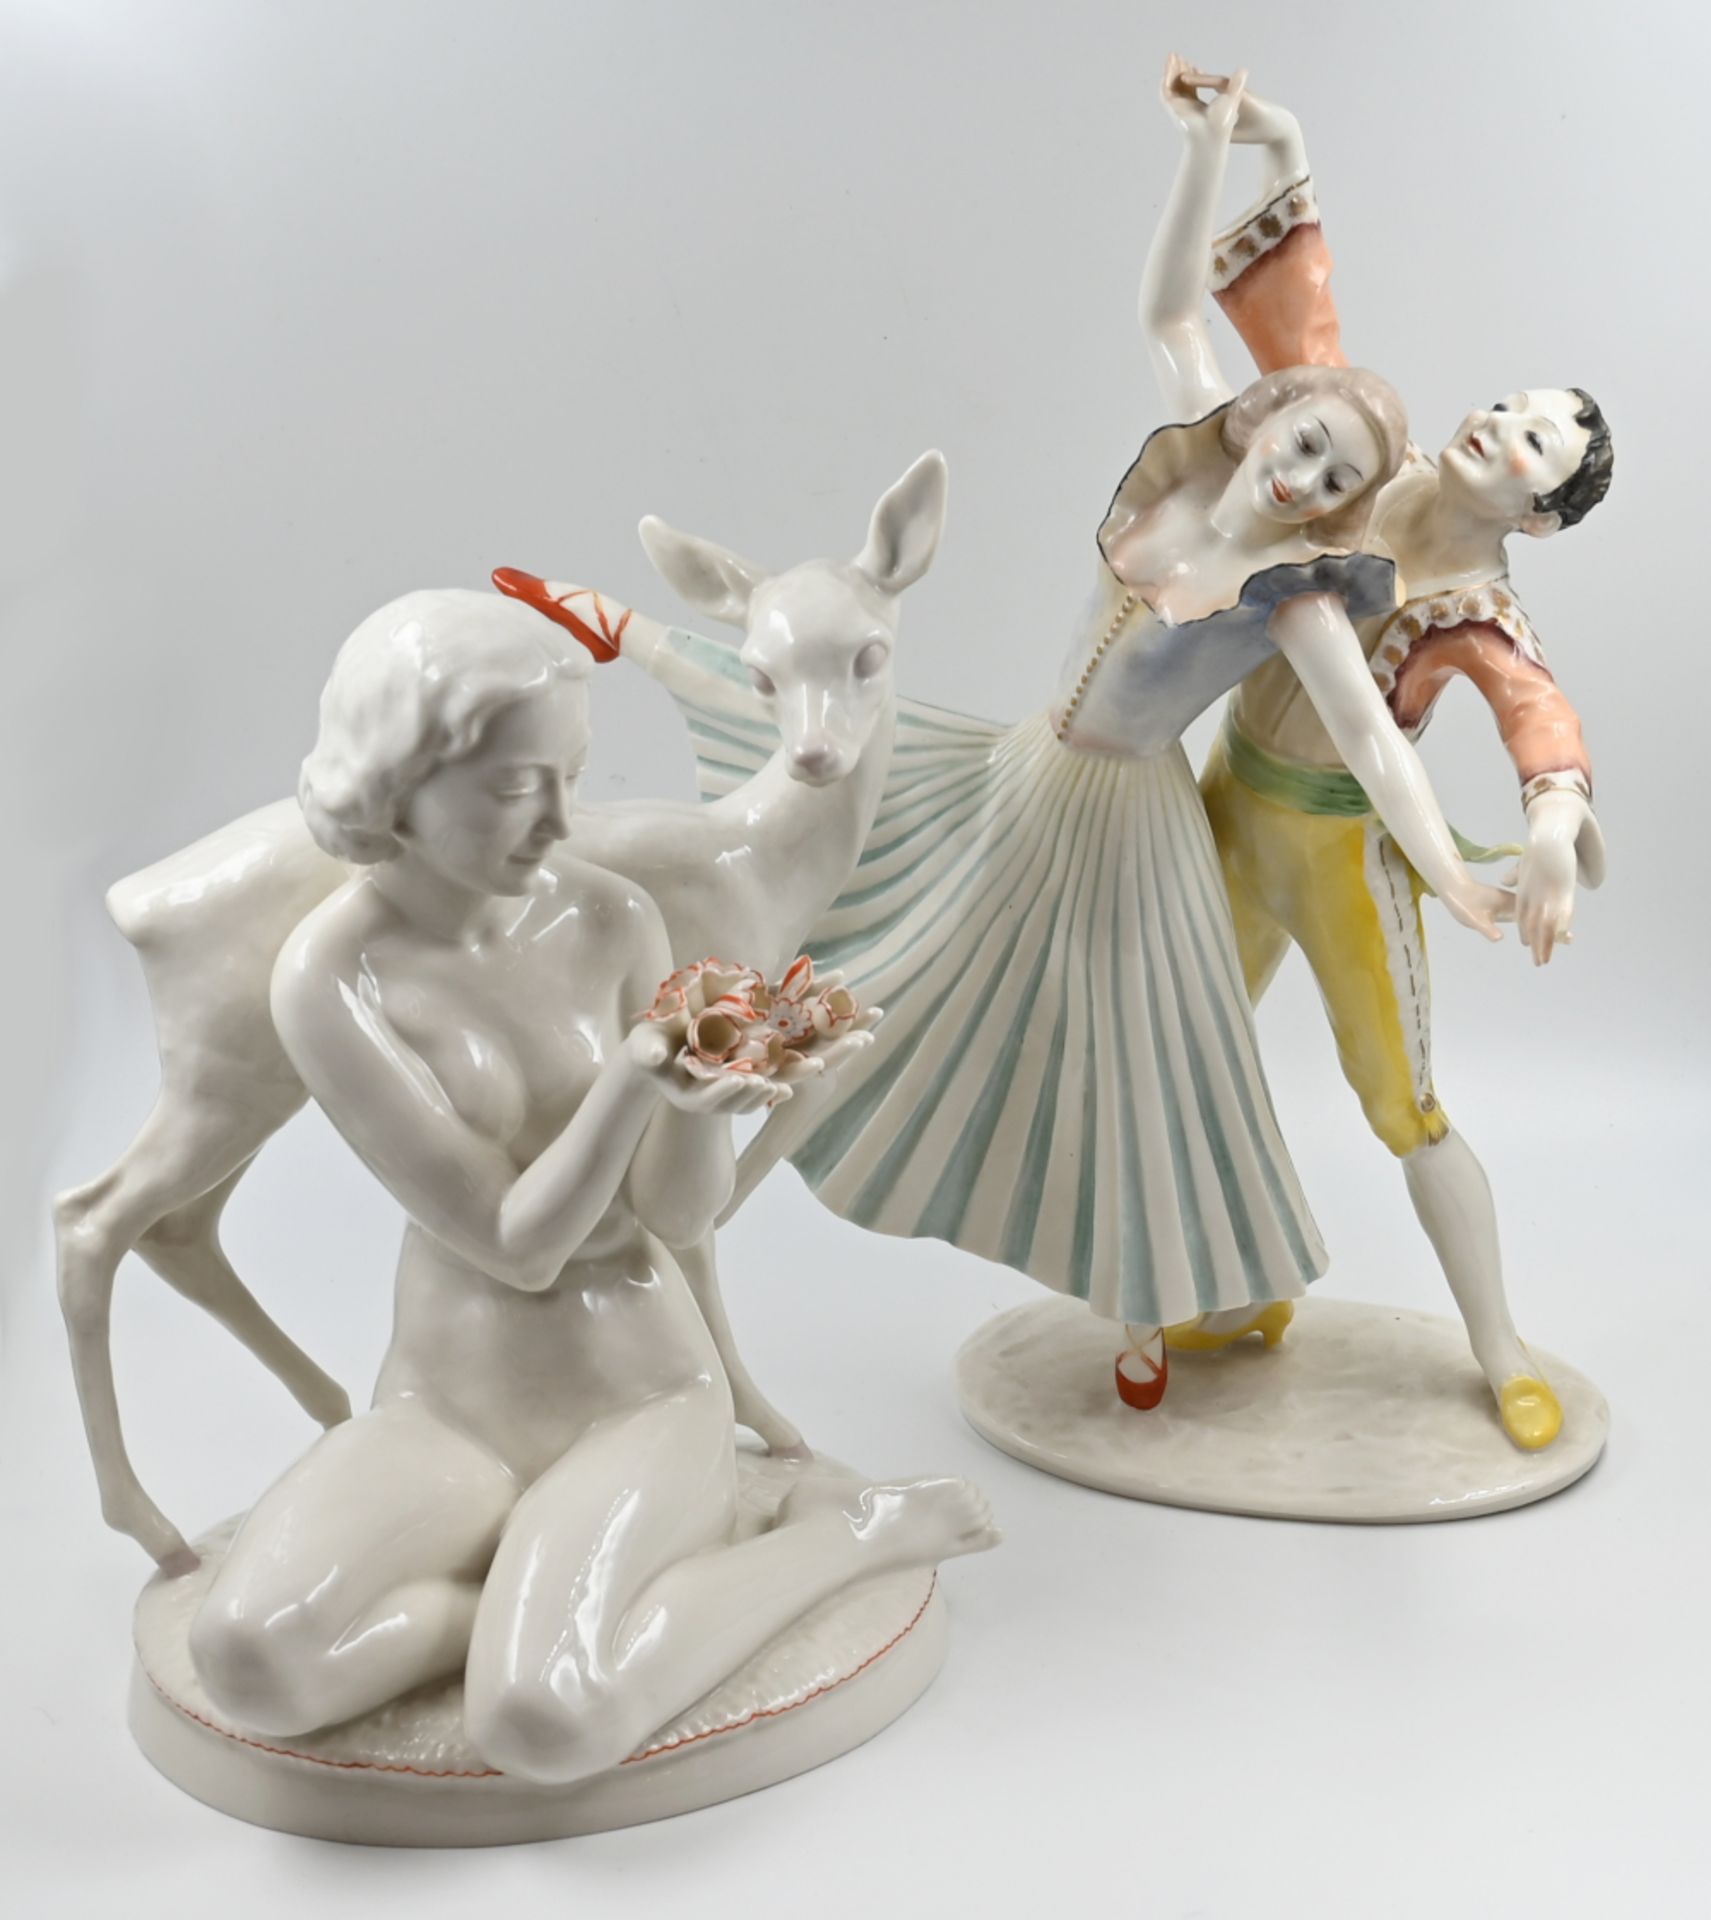 4 Porzellanfiguren/-gruppen HUTSCHENREUTHER, ROSENTHAL "Vogelfamilie", "Tänzerpaar", u.a., - Bild 2 aus 2